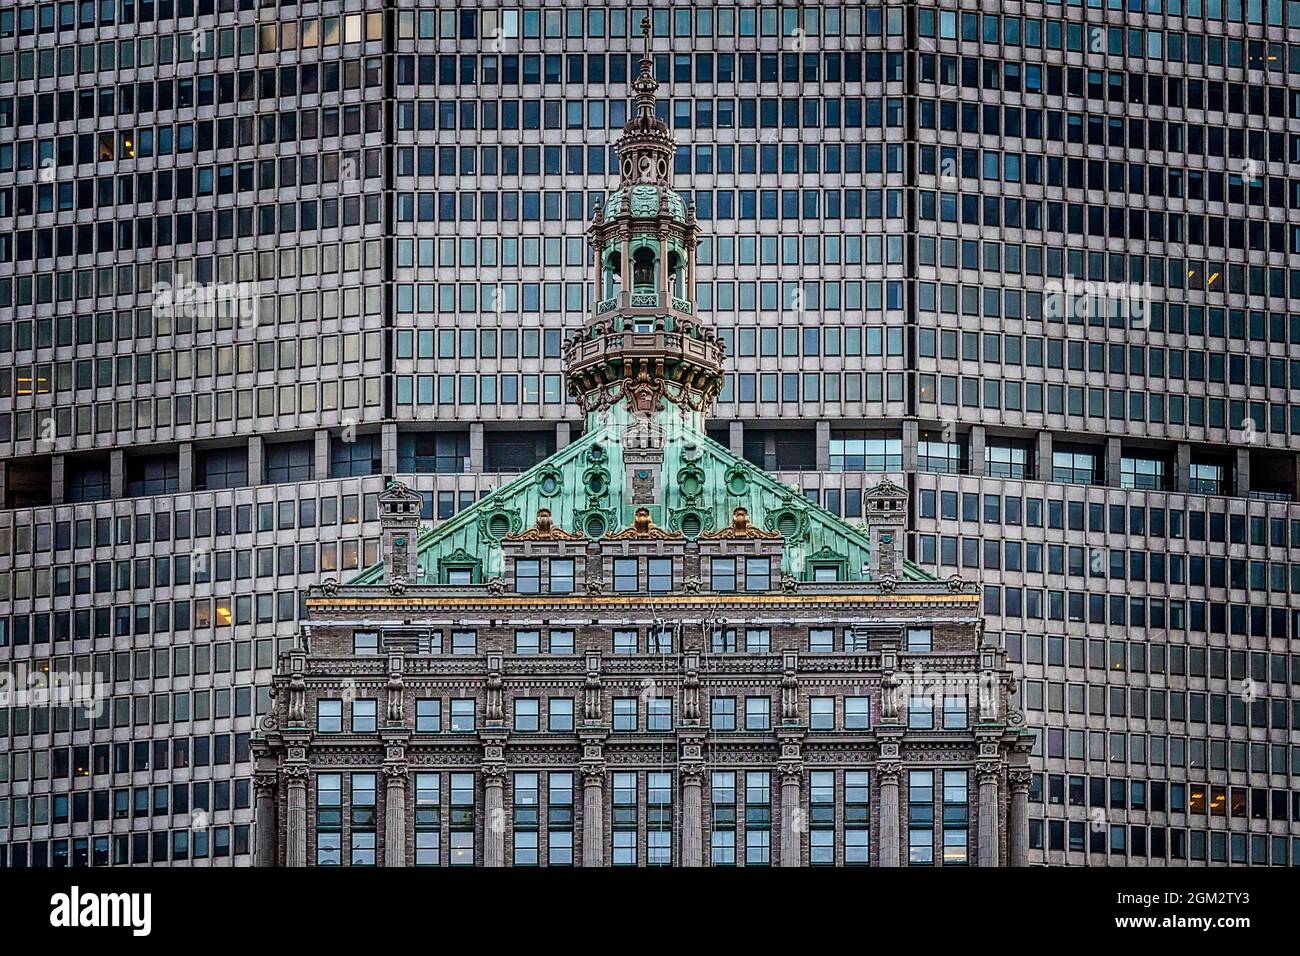 Hemsley Building Tower NYC - Vista della cupola ornata dell'iconico punto di riferimento di New York City. La parte superiore a forma piramidale dell'edificio Hemsley è in posizione Foto Stock